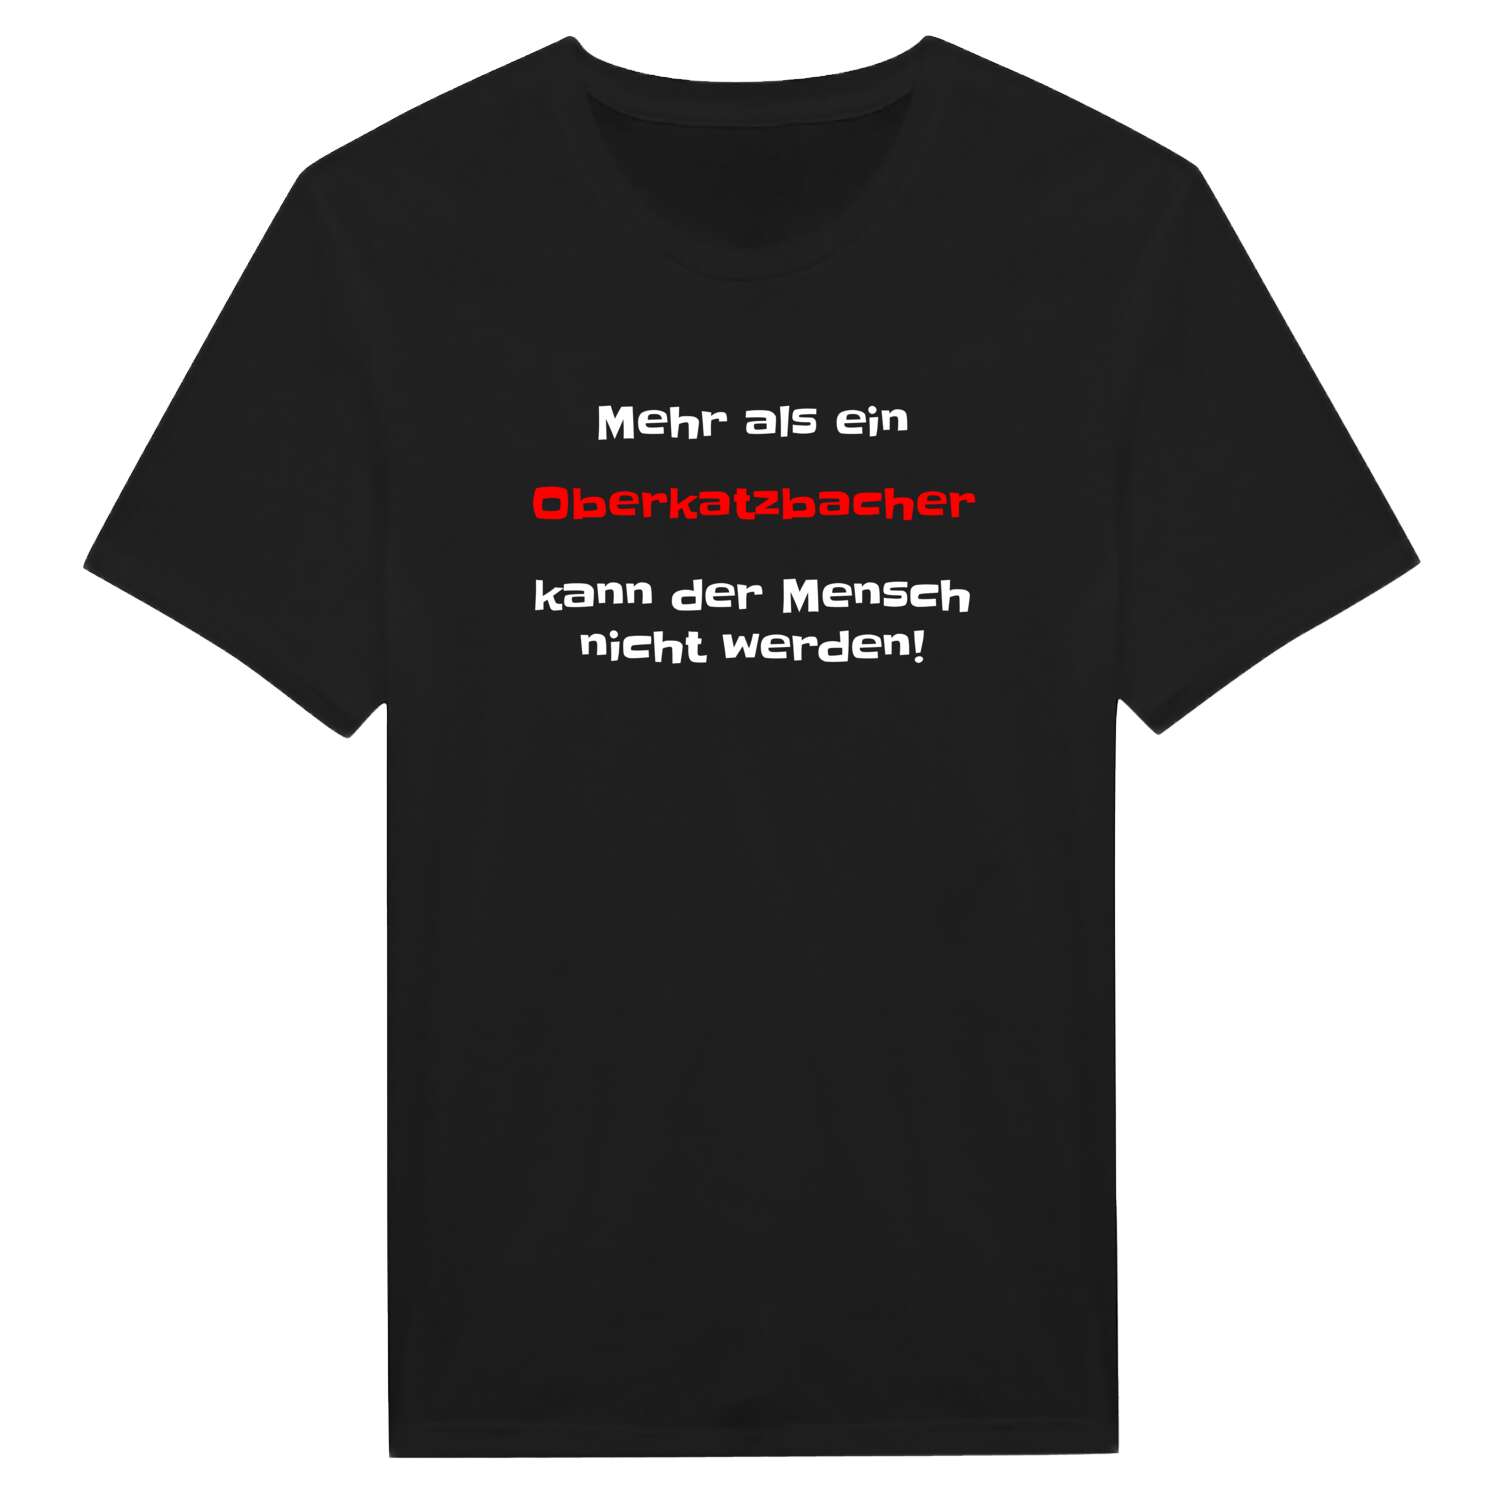 Oberkatzbach T-Shirt »Mehr als ein«